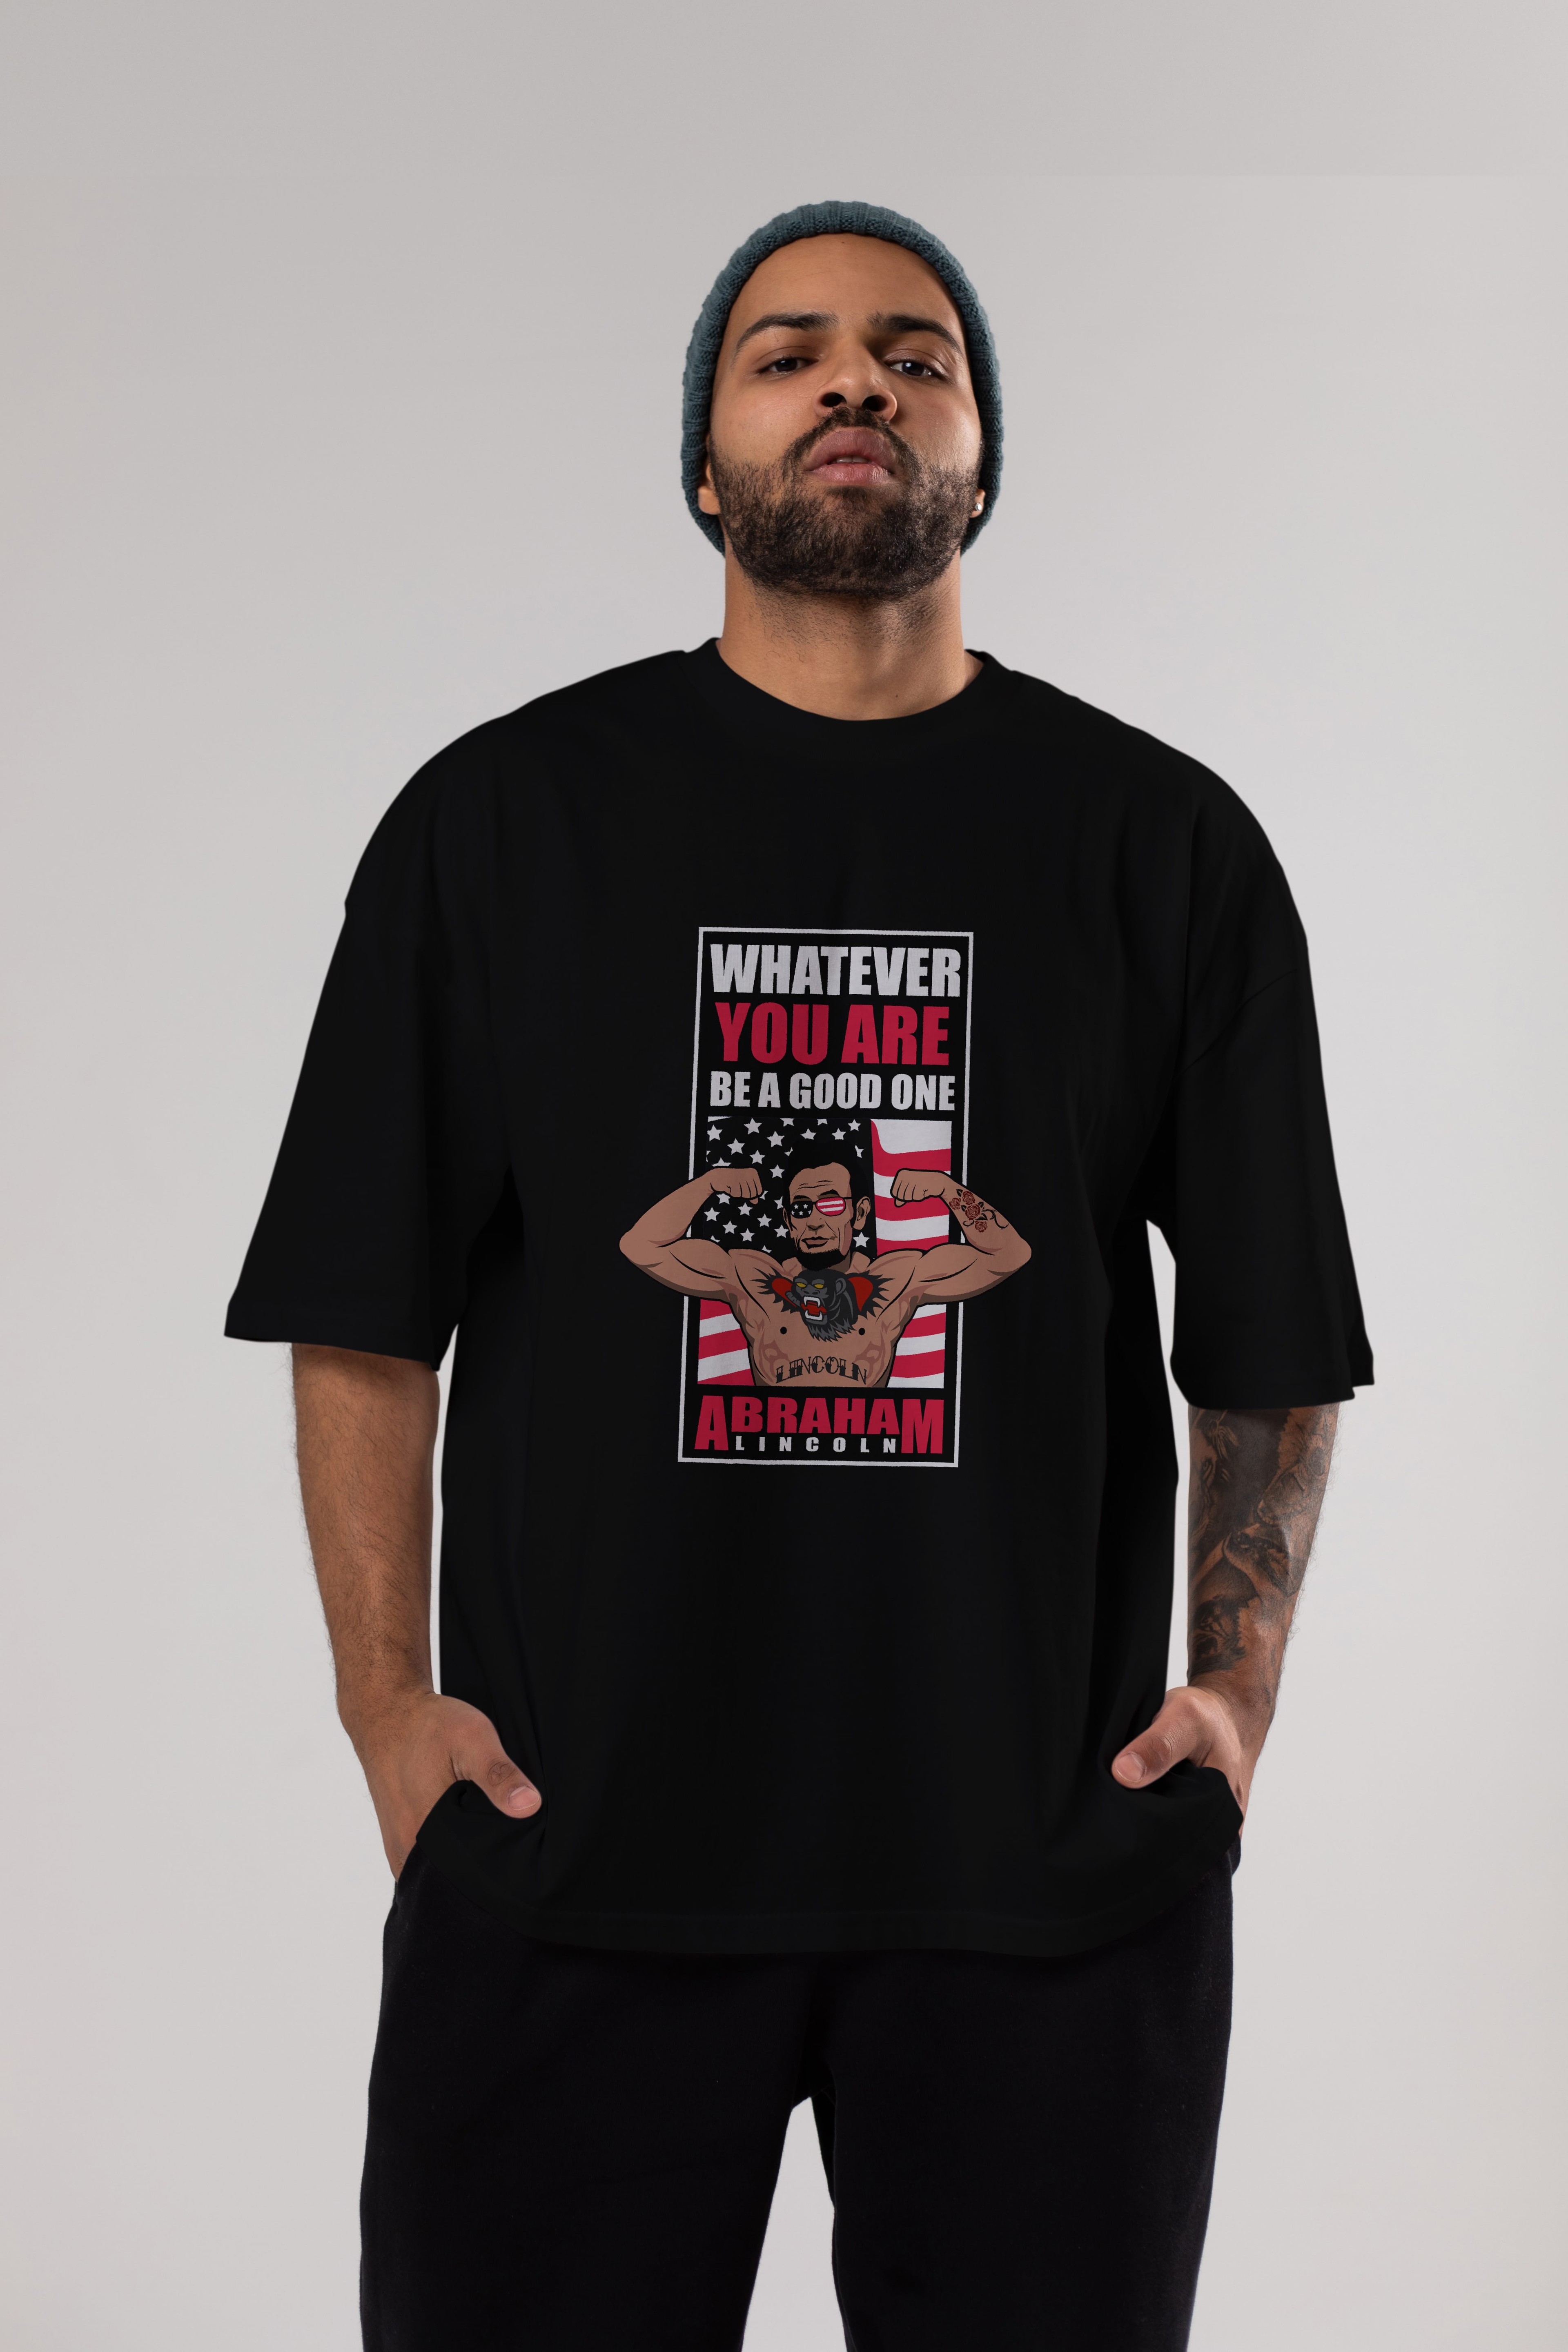 Lincoln Fighter Ön Baskılı Oversize t-shirt Erkek Kadın Unisex %100 Pamuk tişort